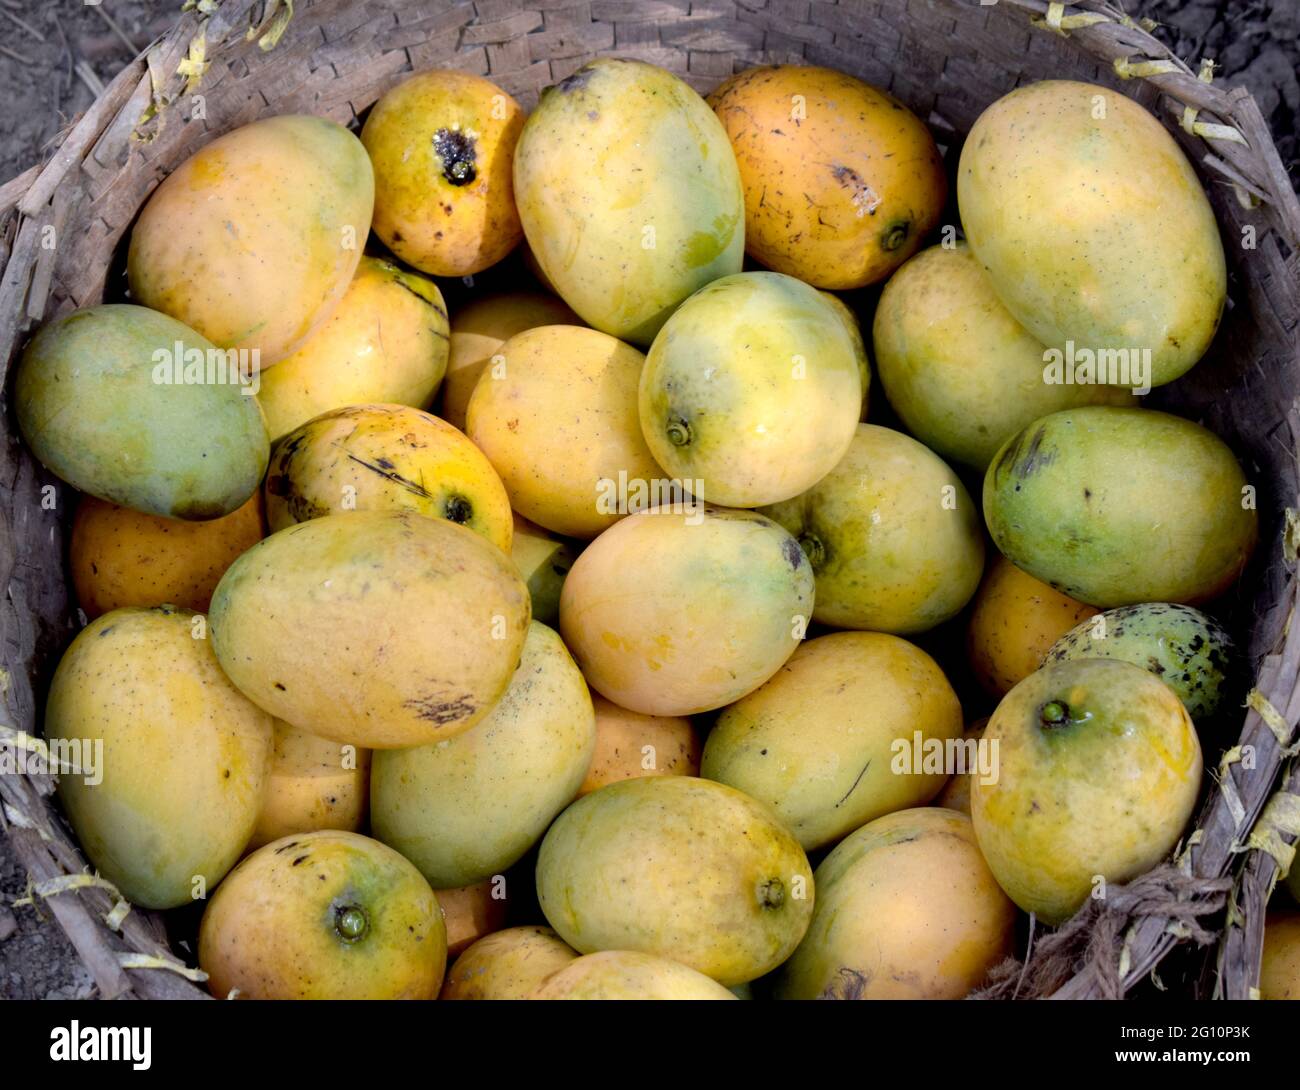 Délicieux plat de mangue fraîche biologique sur le panier Banque D'Images